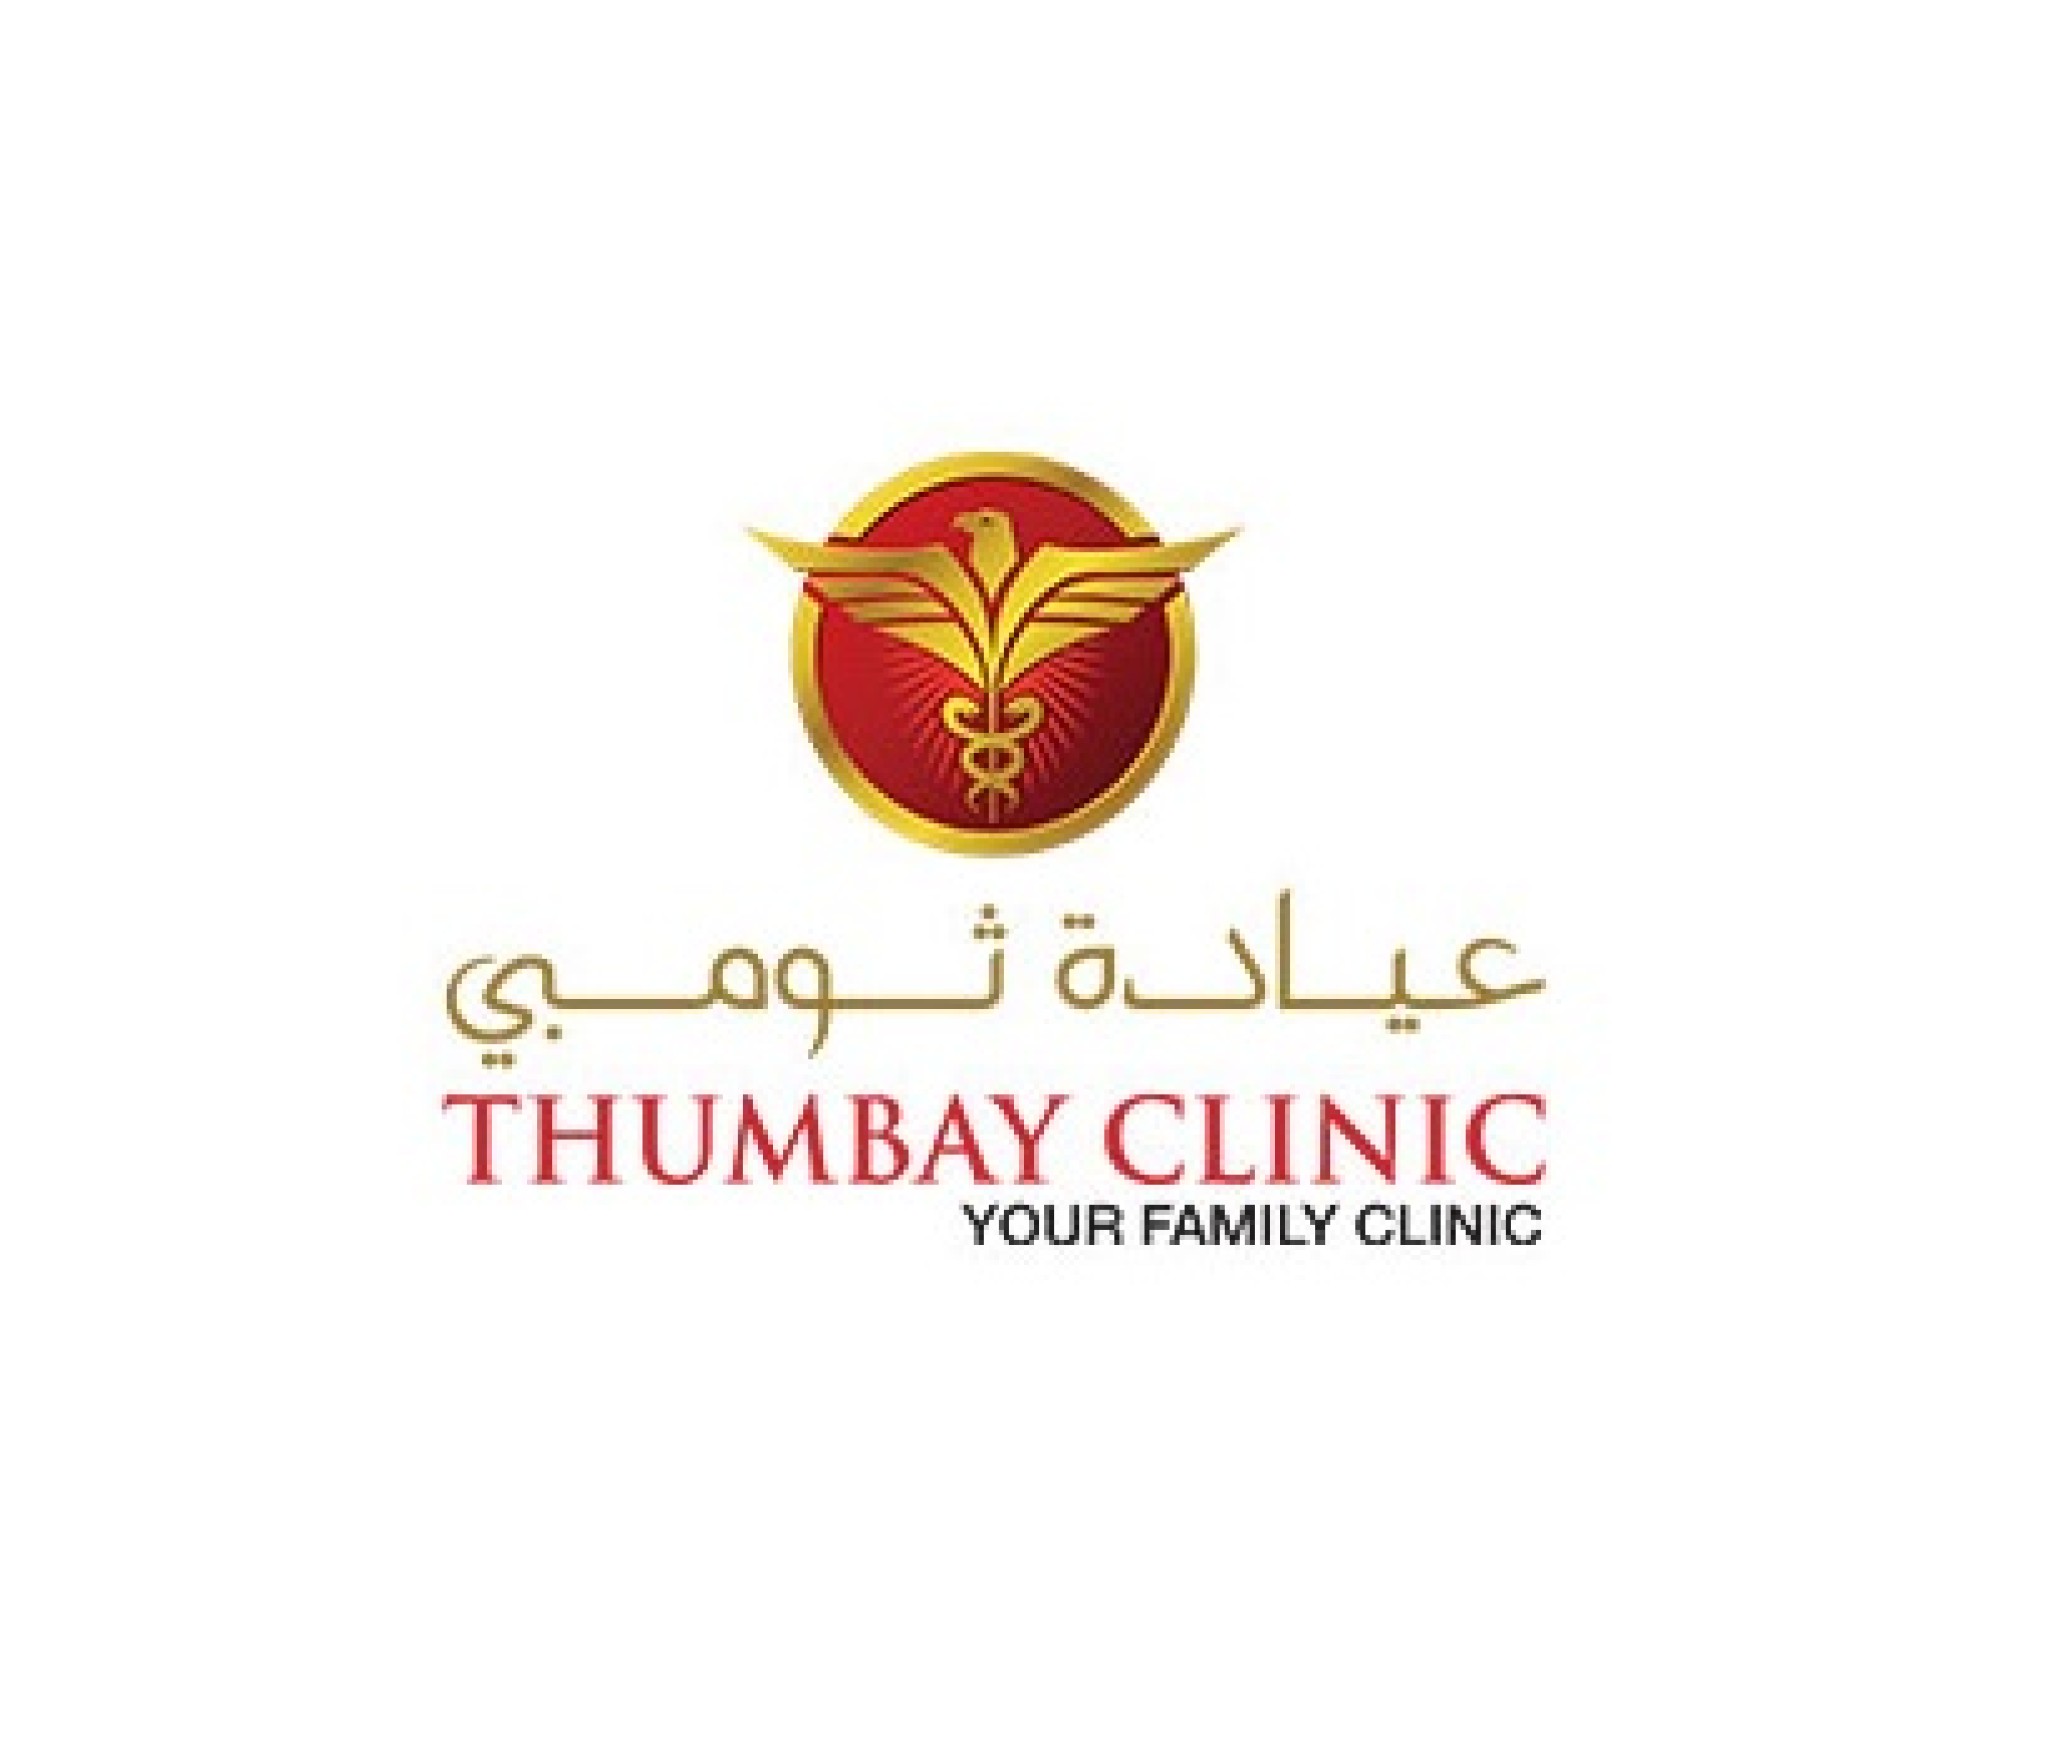 Thumbay Clinic, Al Nakheel – Ras Al Khaimah